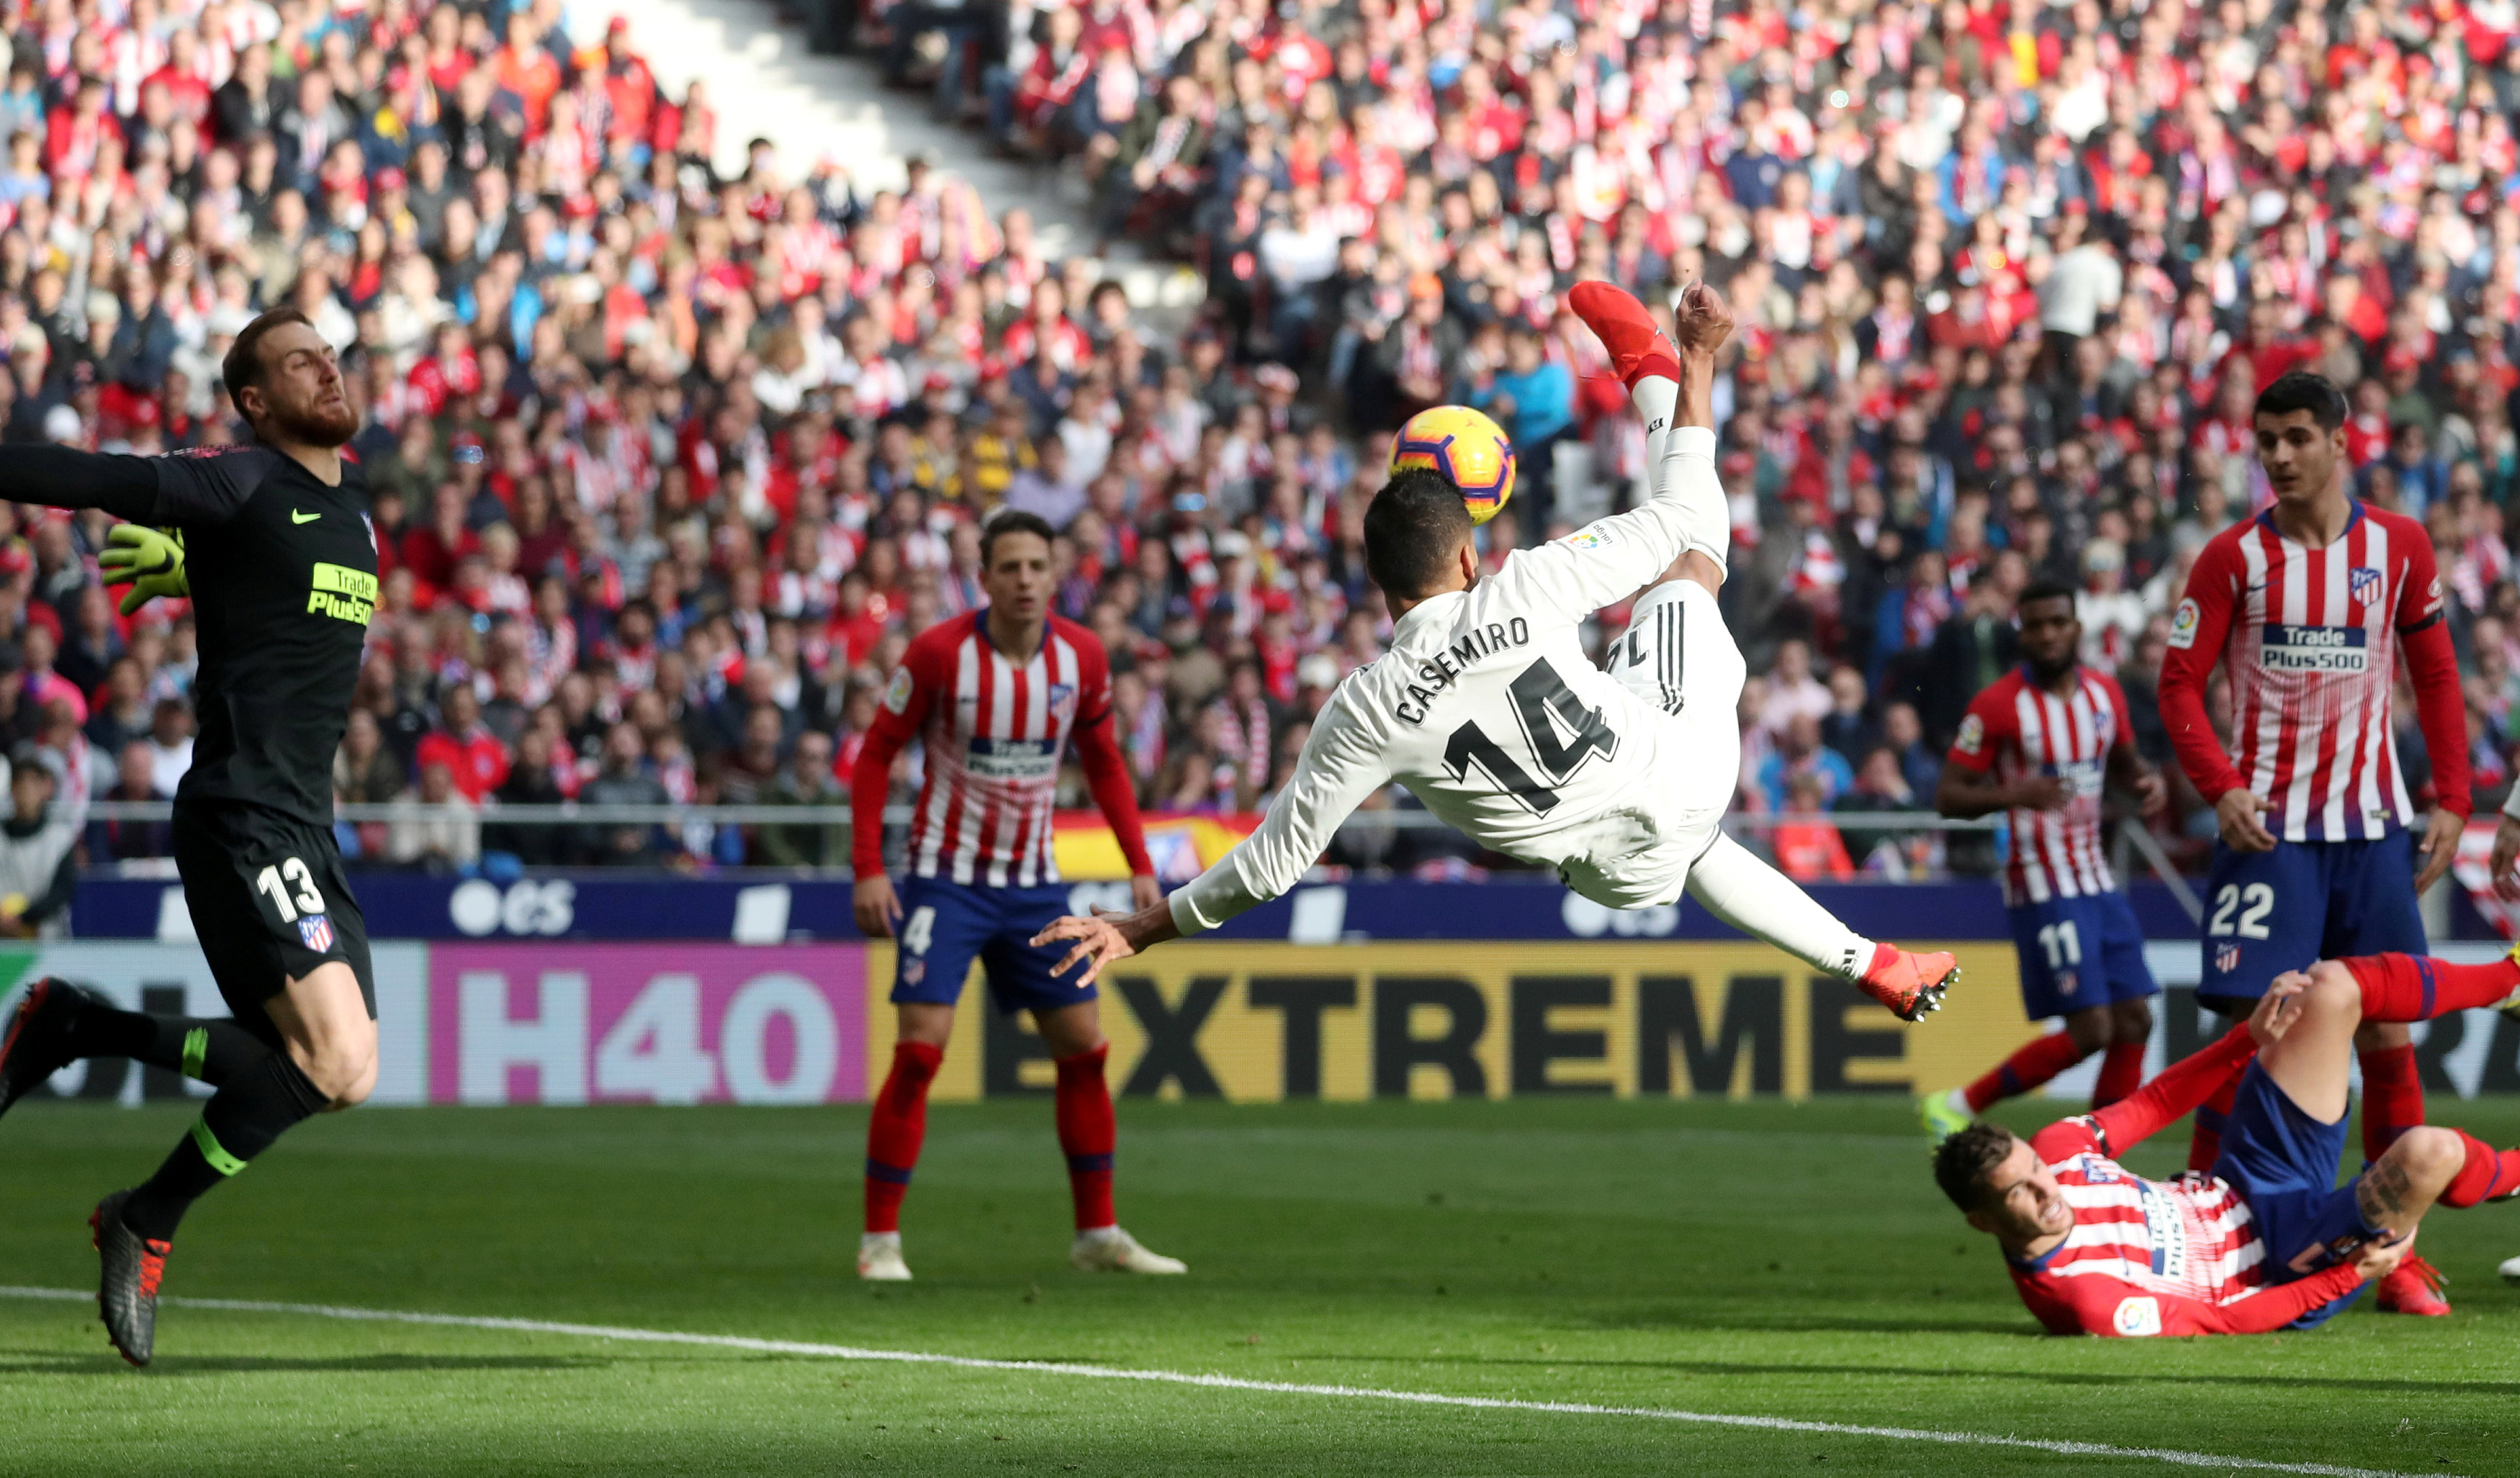 اللاعب كاسيميرو يسجل لريال مدريد هدفه الأول أمام نادي اتلتيكو مدريد في الدوري الإسباني. 9 فبراير (شباط) 2019. (رويترز)